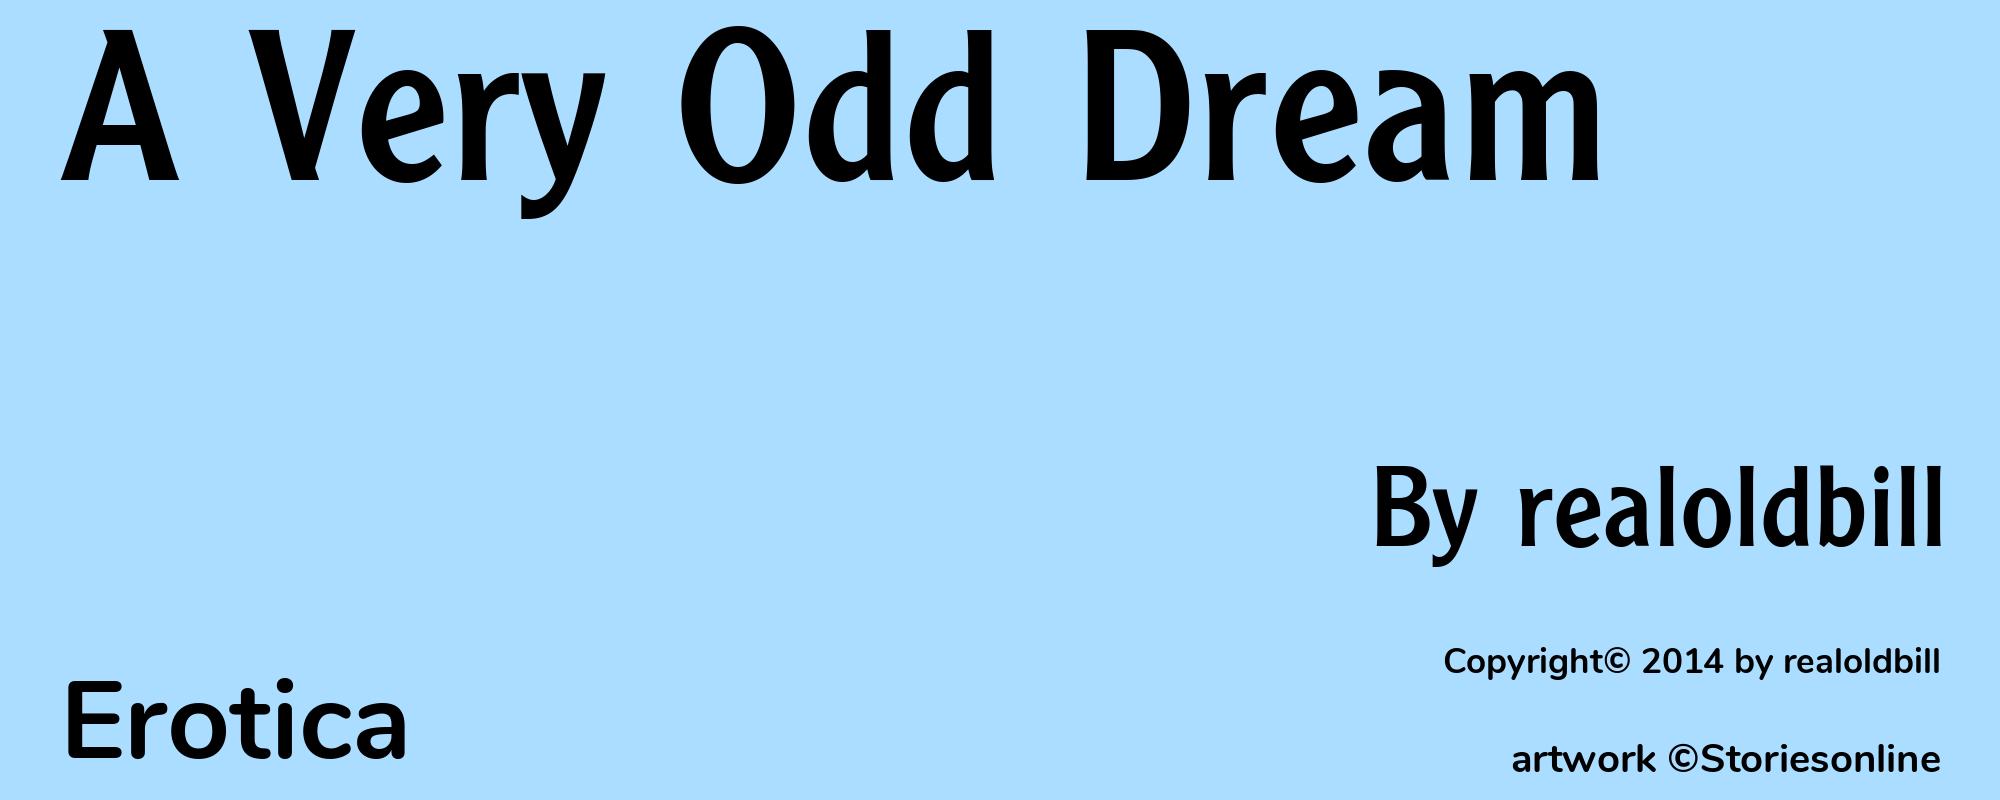 A Very Odd Dream - Cover